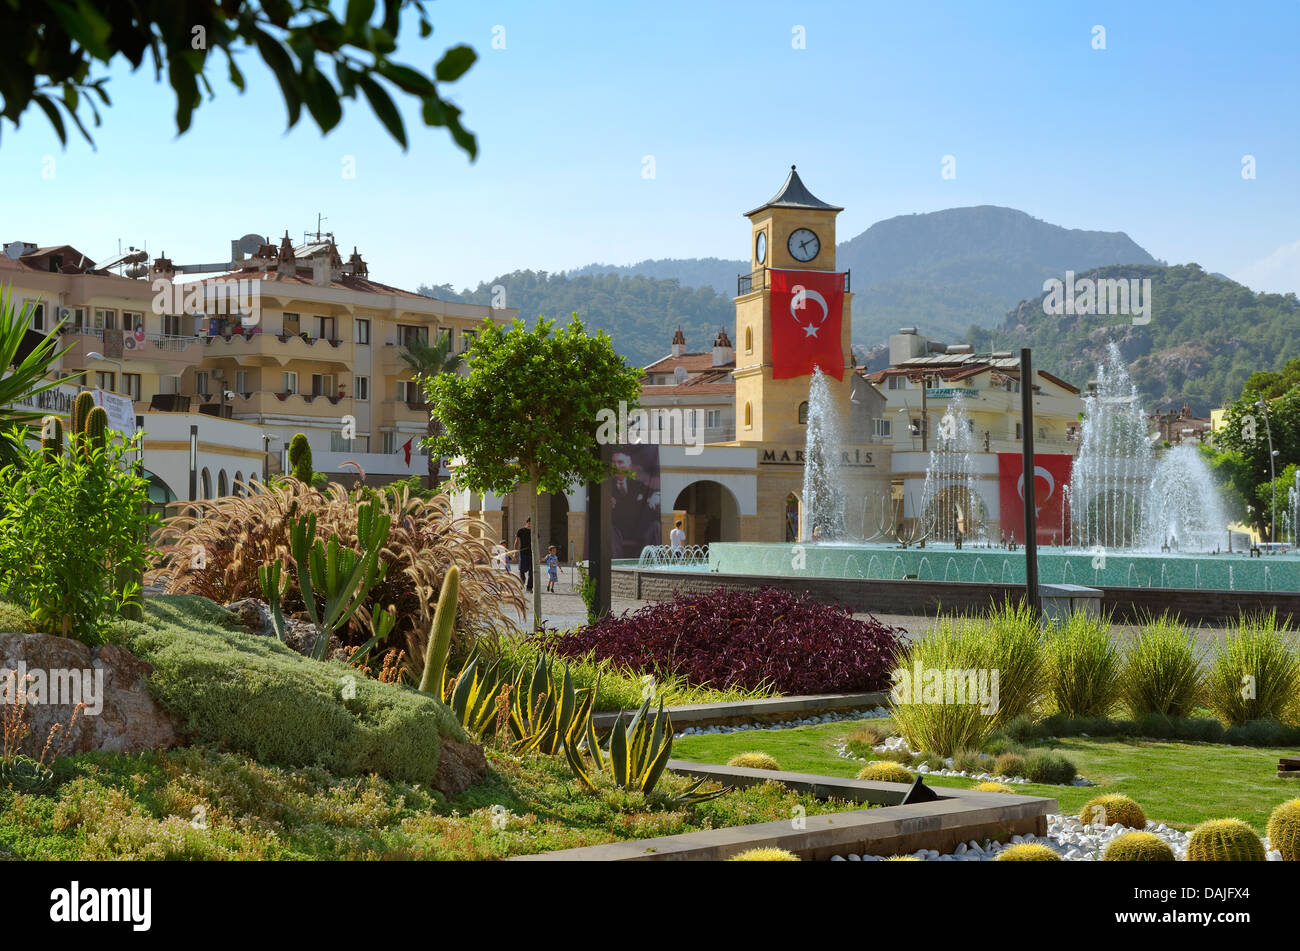 La nouvelle place de la ville de Marmaris avec fontaines. Province de Mugla, Turquie. Construit en 2012. Banque D'Images